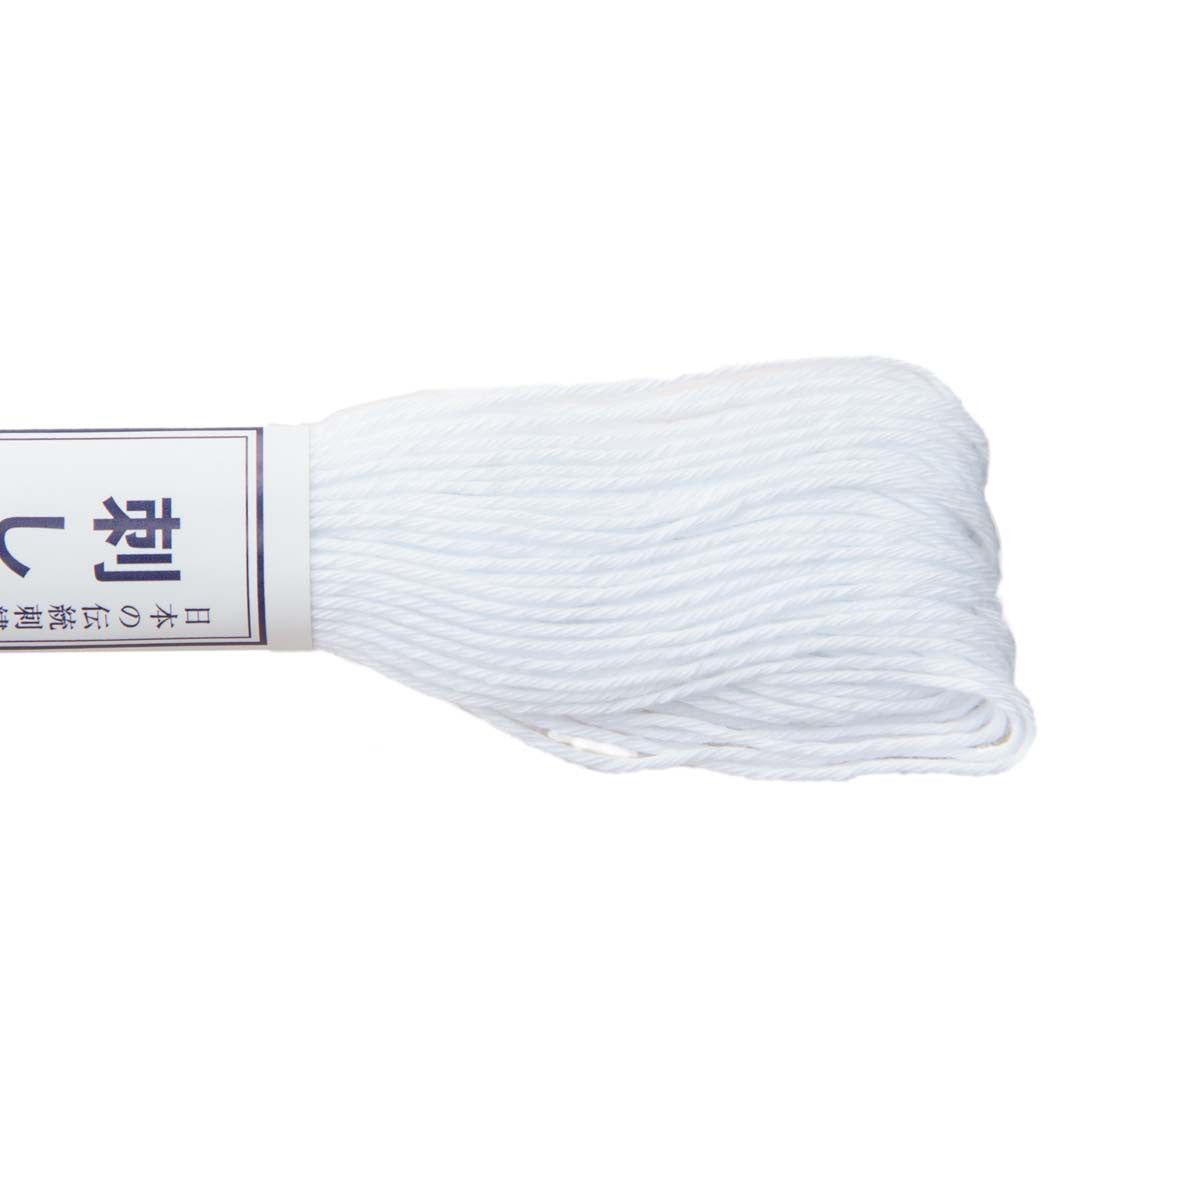 Sashiko cotton thread